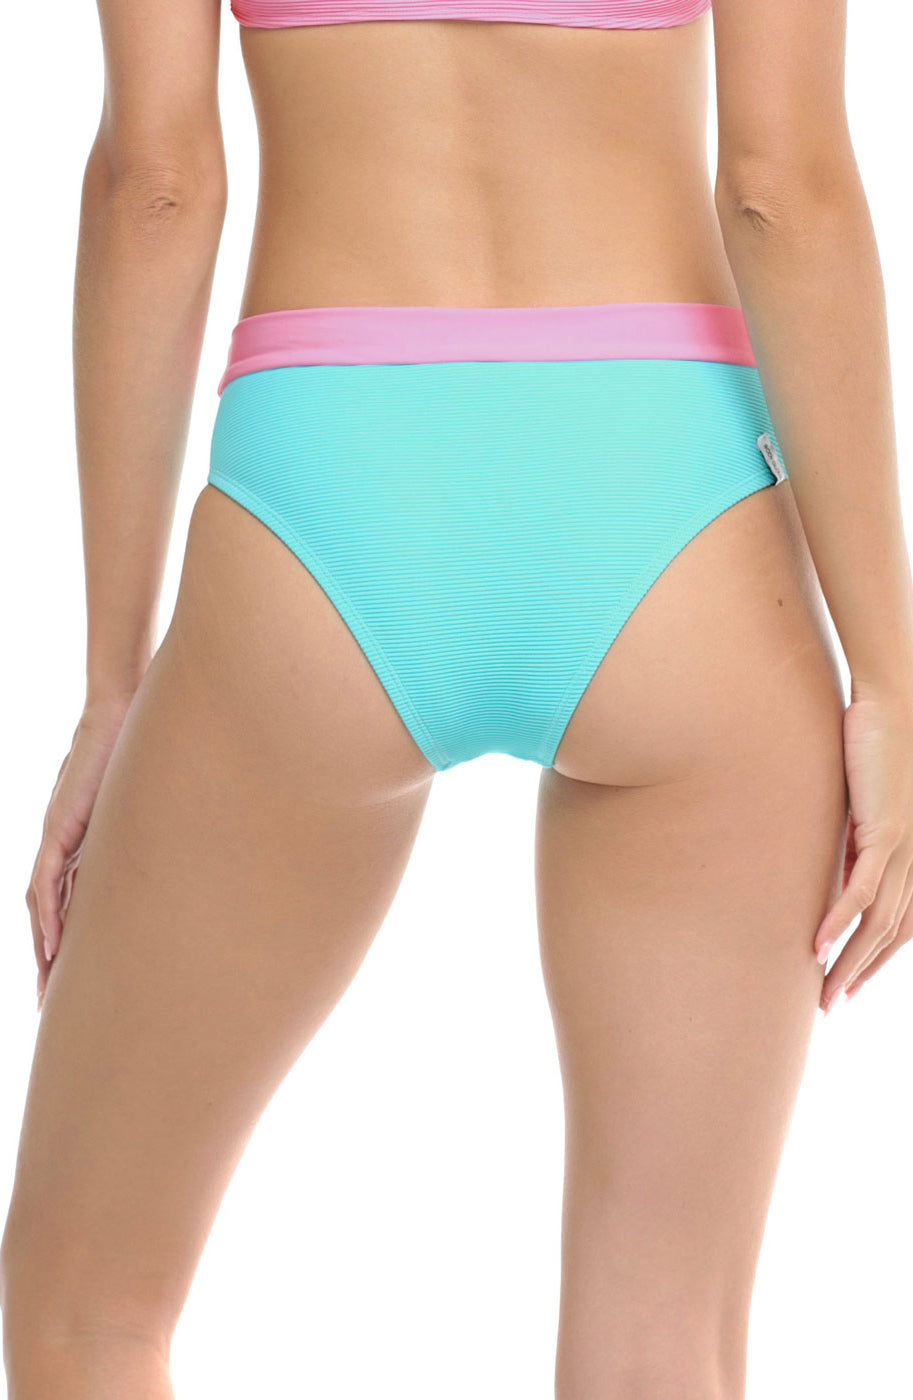 Body Glove: Spectrum Marlee High Waisted Bikini Bottom - CYAN